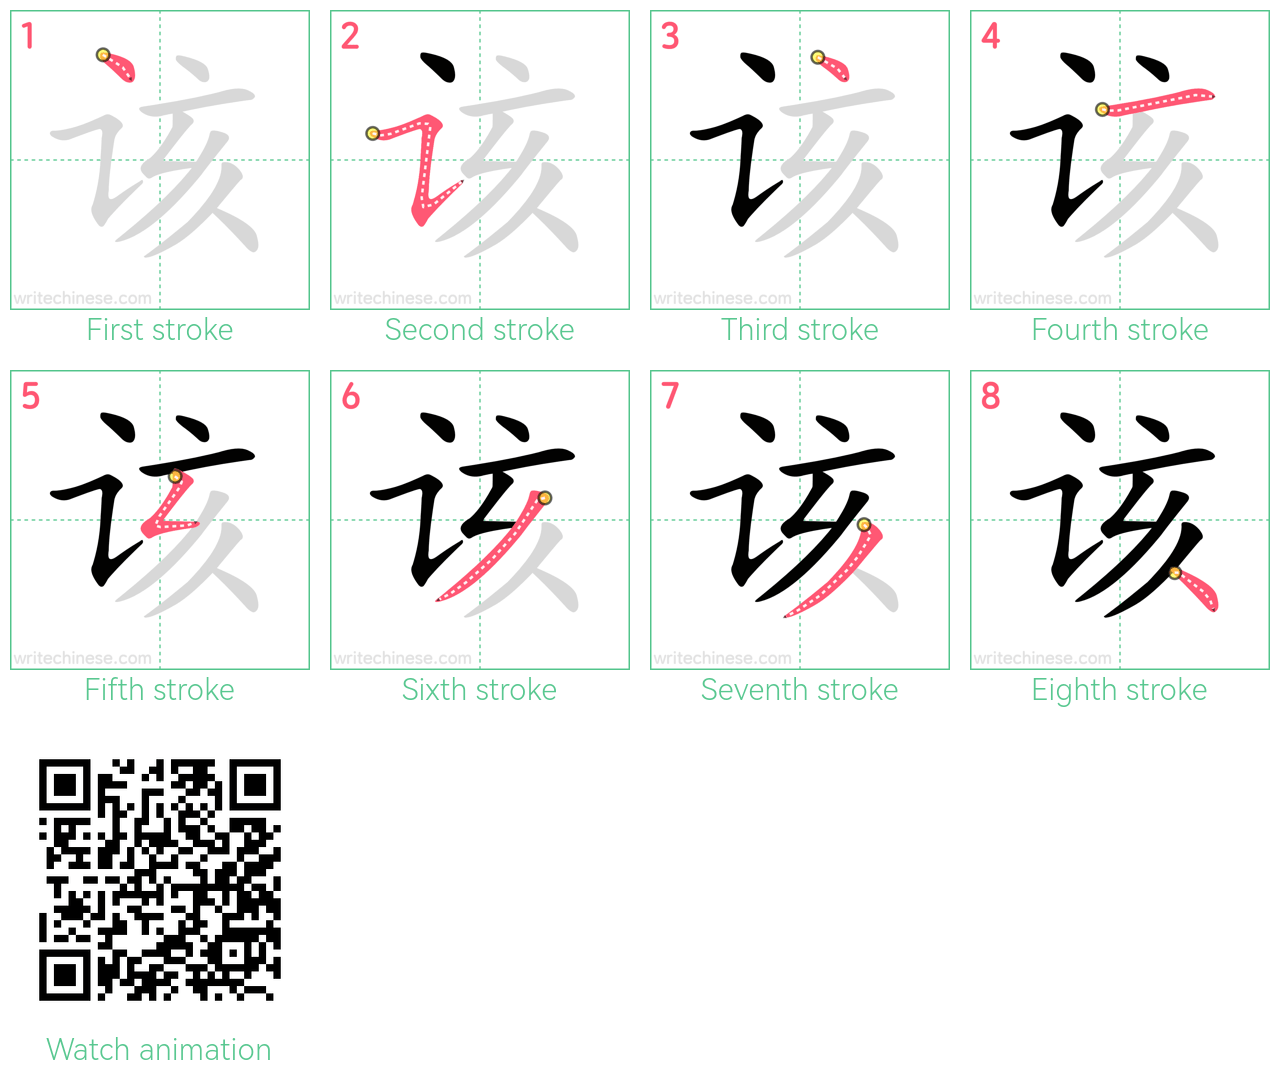 该 step-by-step stroke order diagrams